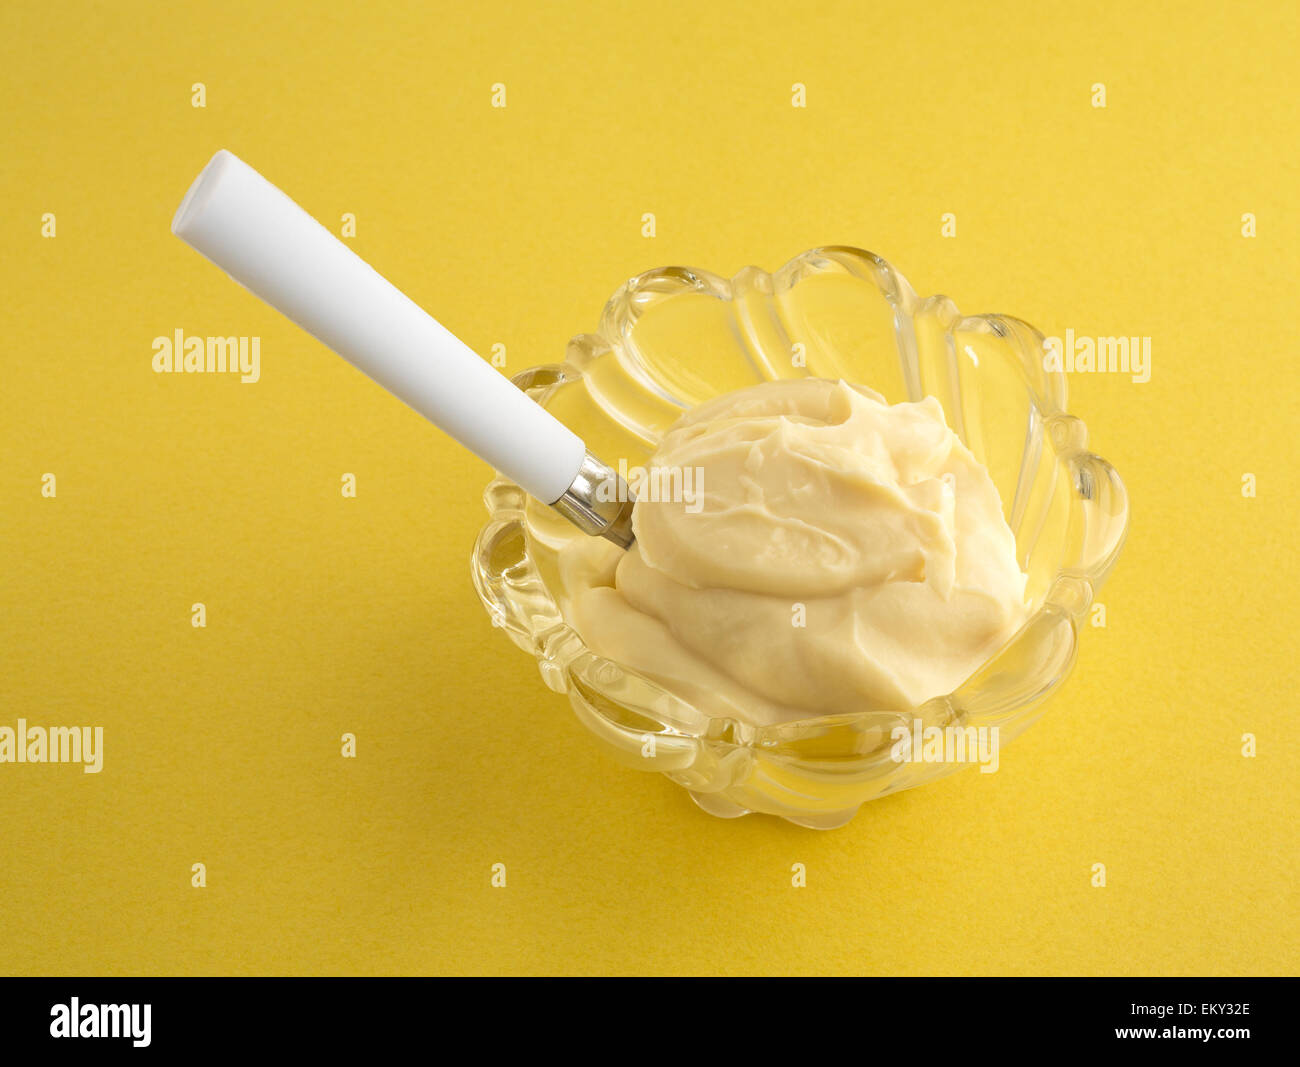 Un bol en verre décoratif avec une portion de pudding de vanille et une cuillère sur un fond jaune. Banque D'Images